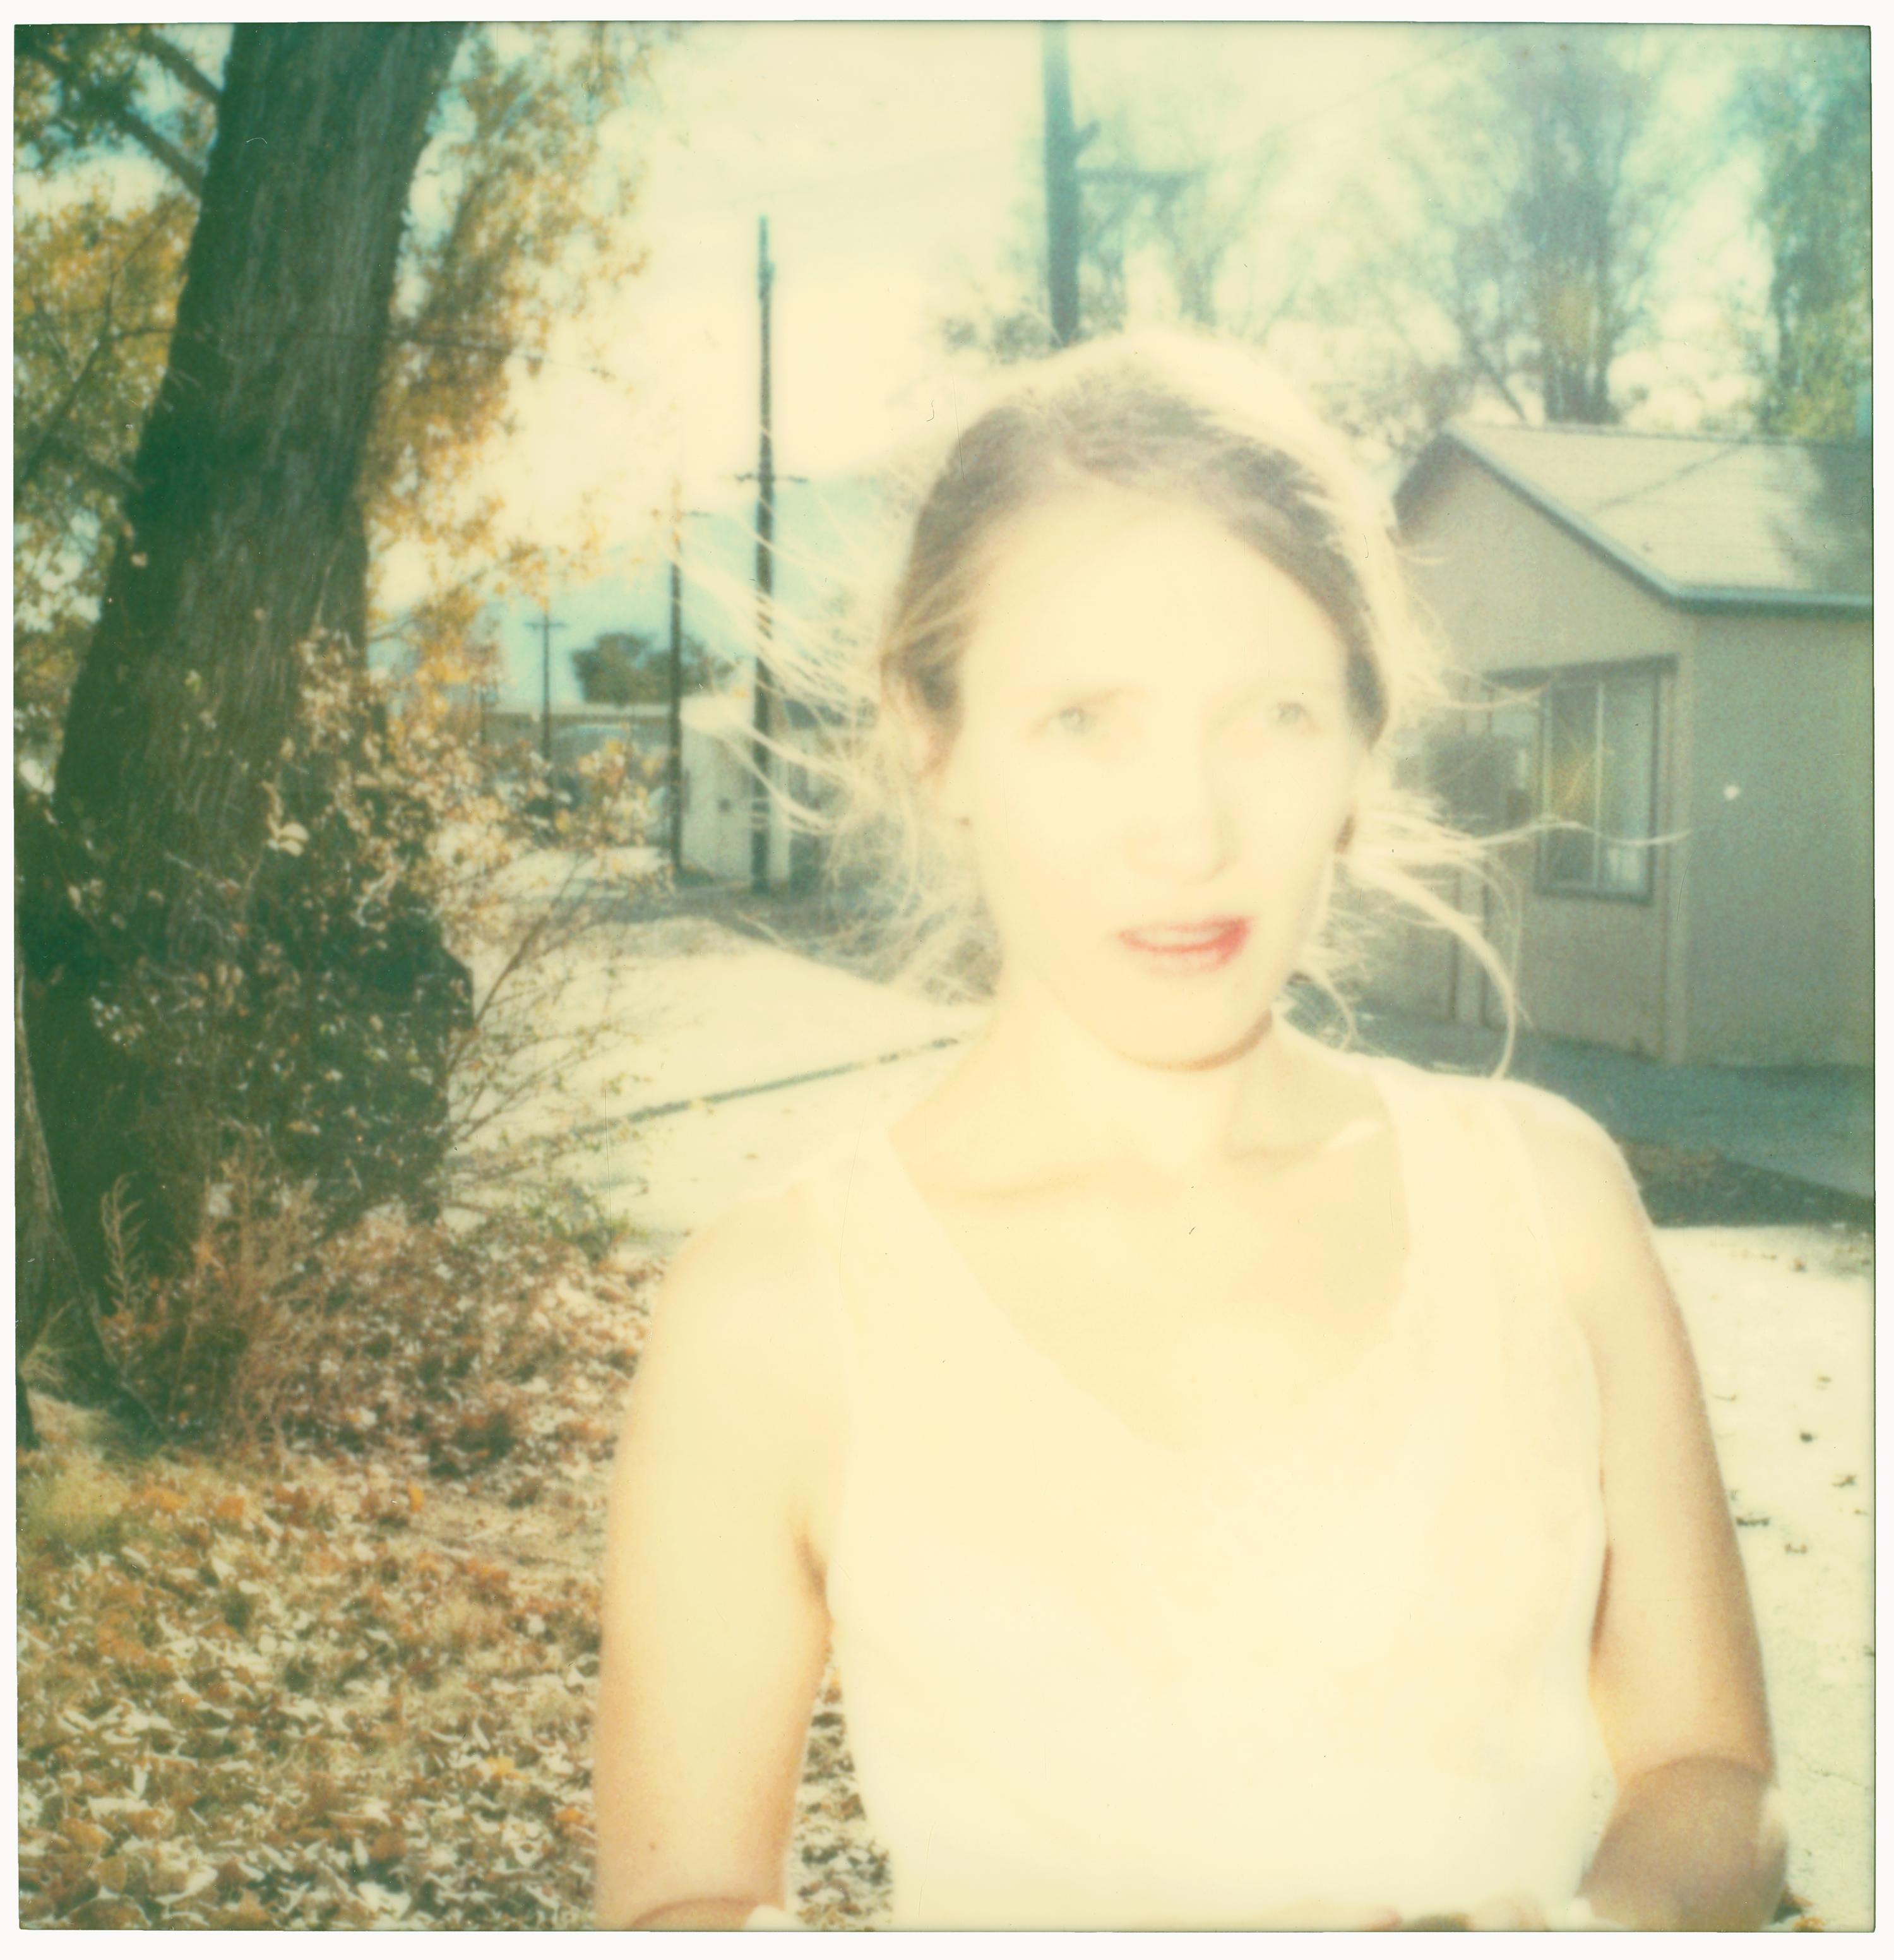 Stefanie Schneider Color Photograph – Back Alley II (Die letzte Bilderausstellung) – 21. Jahrhundert, Polaroid, Farbe